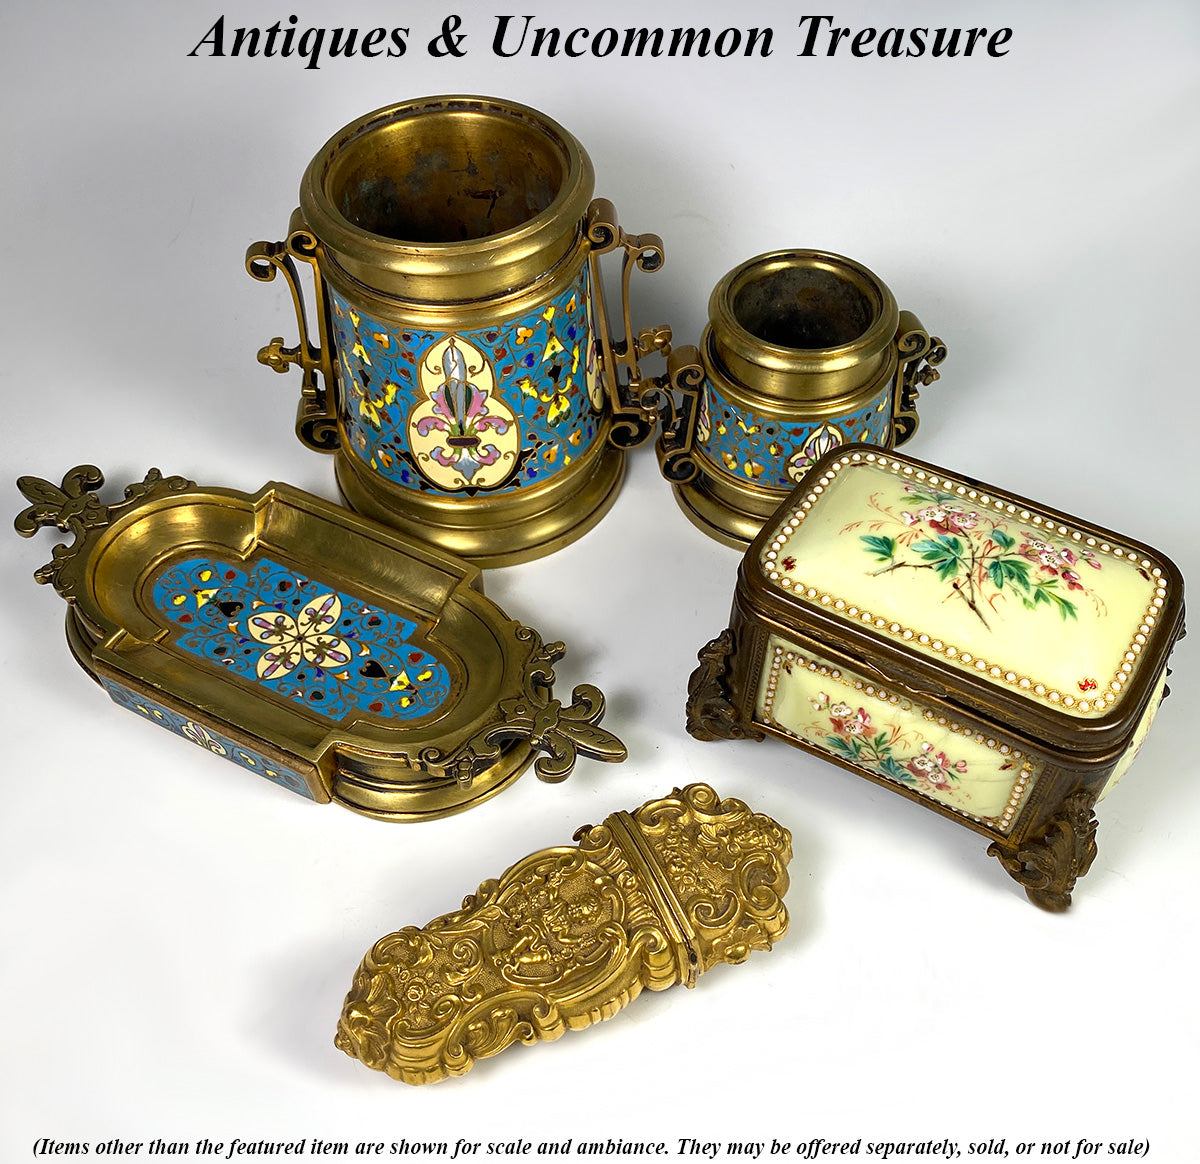 Antique French Kiln-fired Enamel Jewelry Box, Casket in Sevres or Bresse Enamel, Yellow